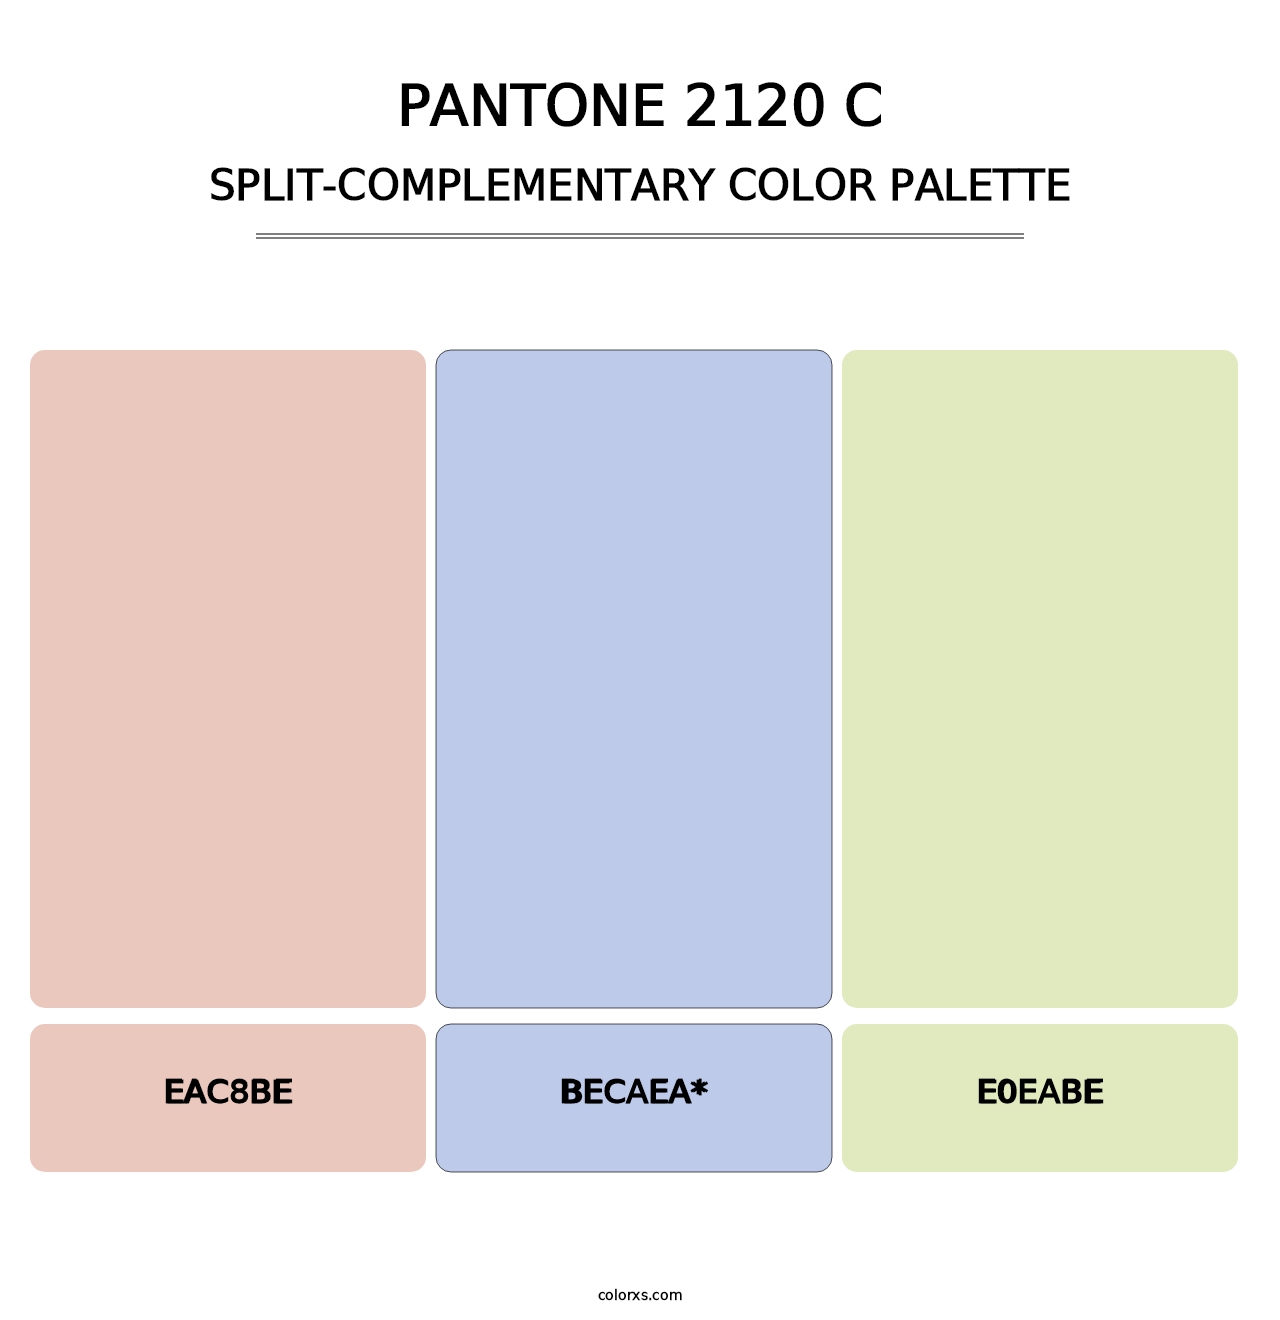 PANTONE 2120 C - Split-Complementary Color Palette